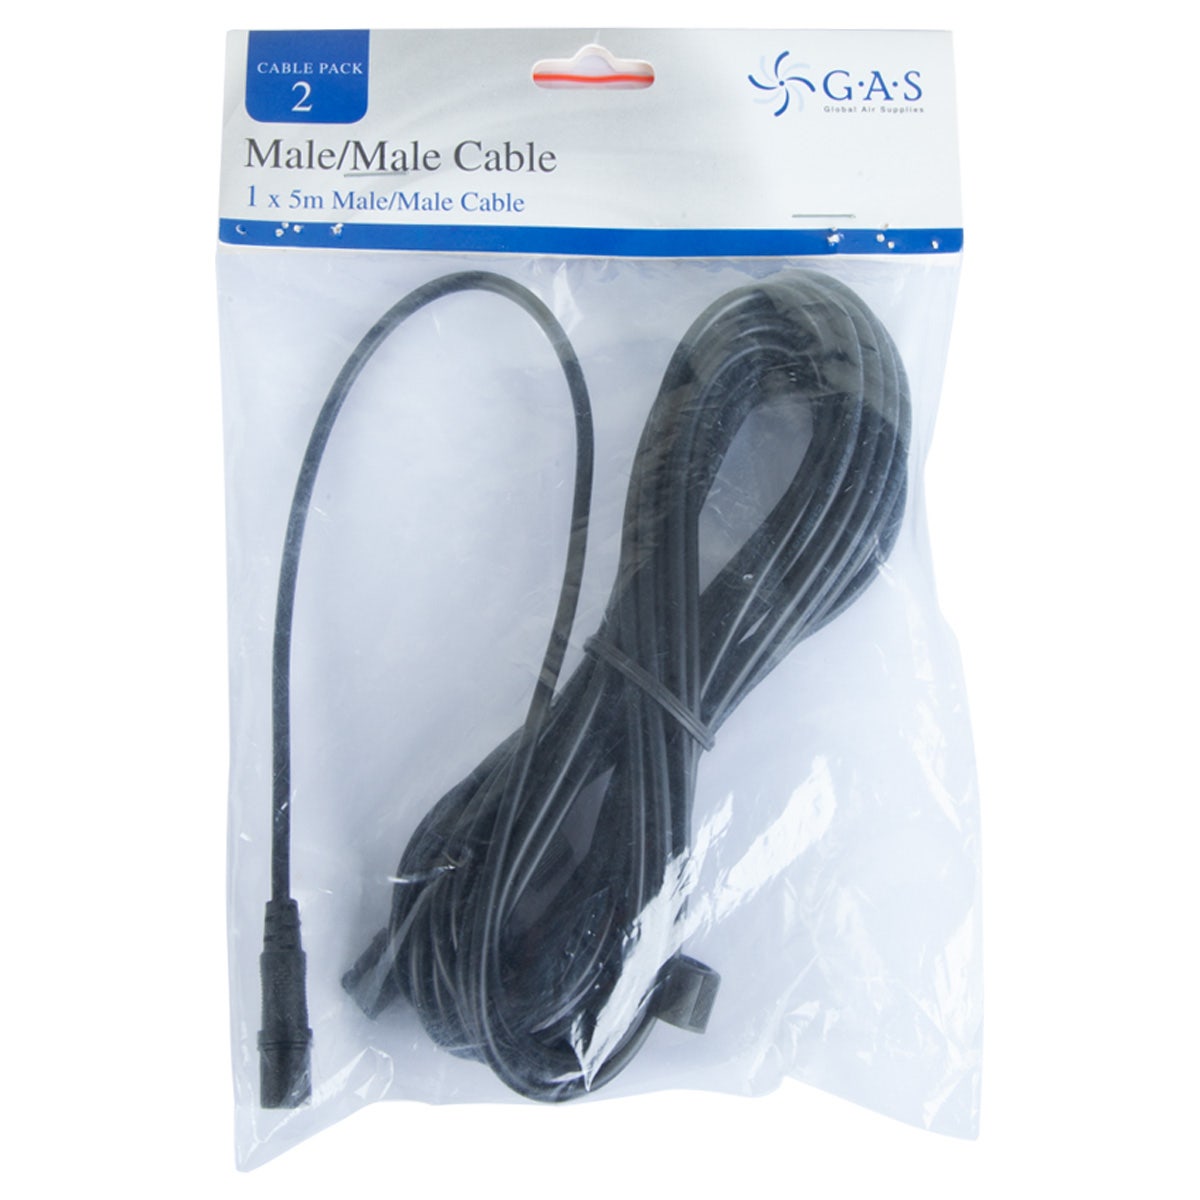 G.A.S Digital EC Fan Cables